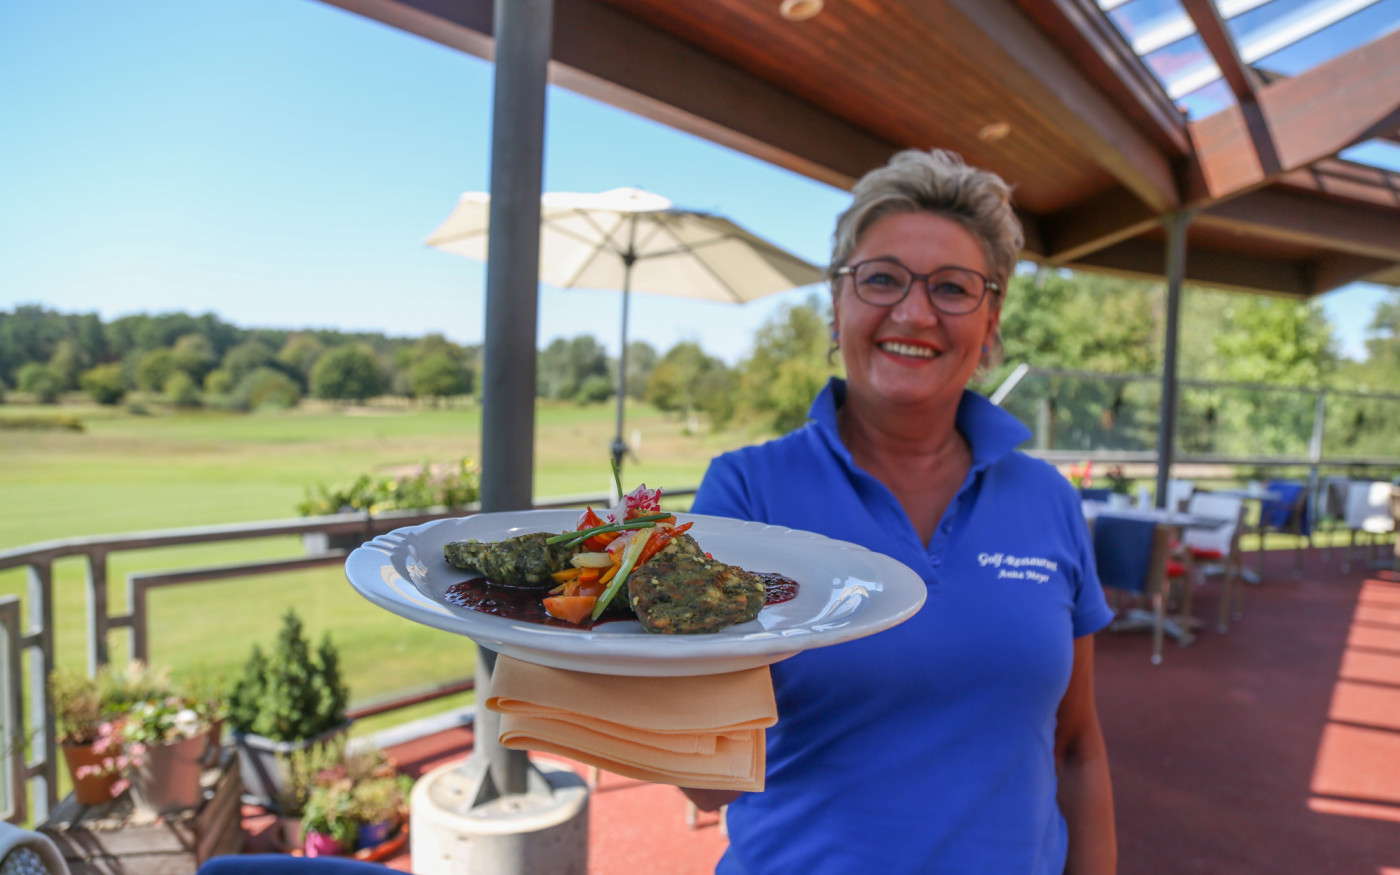 Golf-Restaurant & Café - Frühstück am Rande des grünen Idylls  jeden 1. und 3. Sonntag im Monat